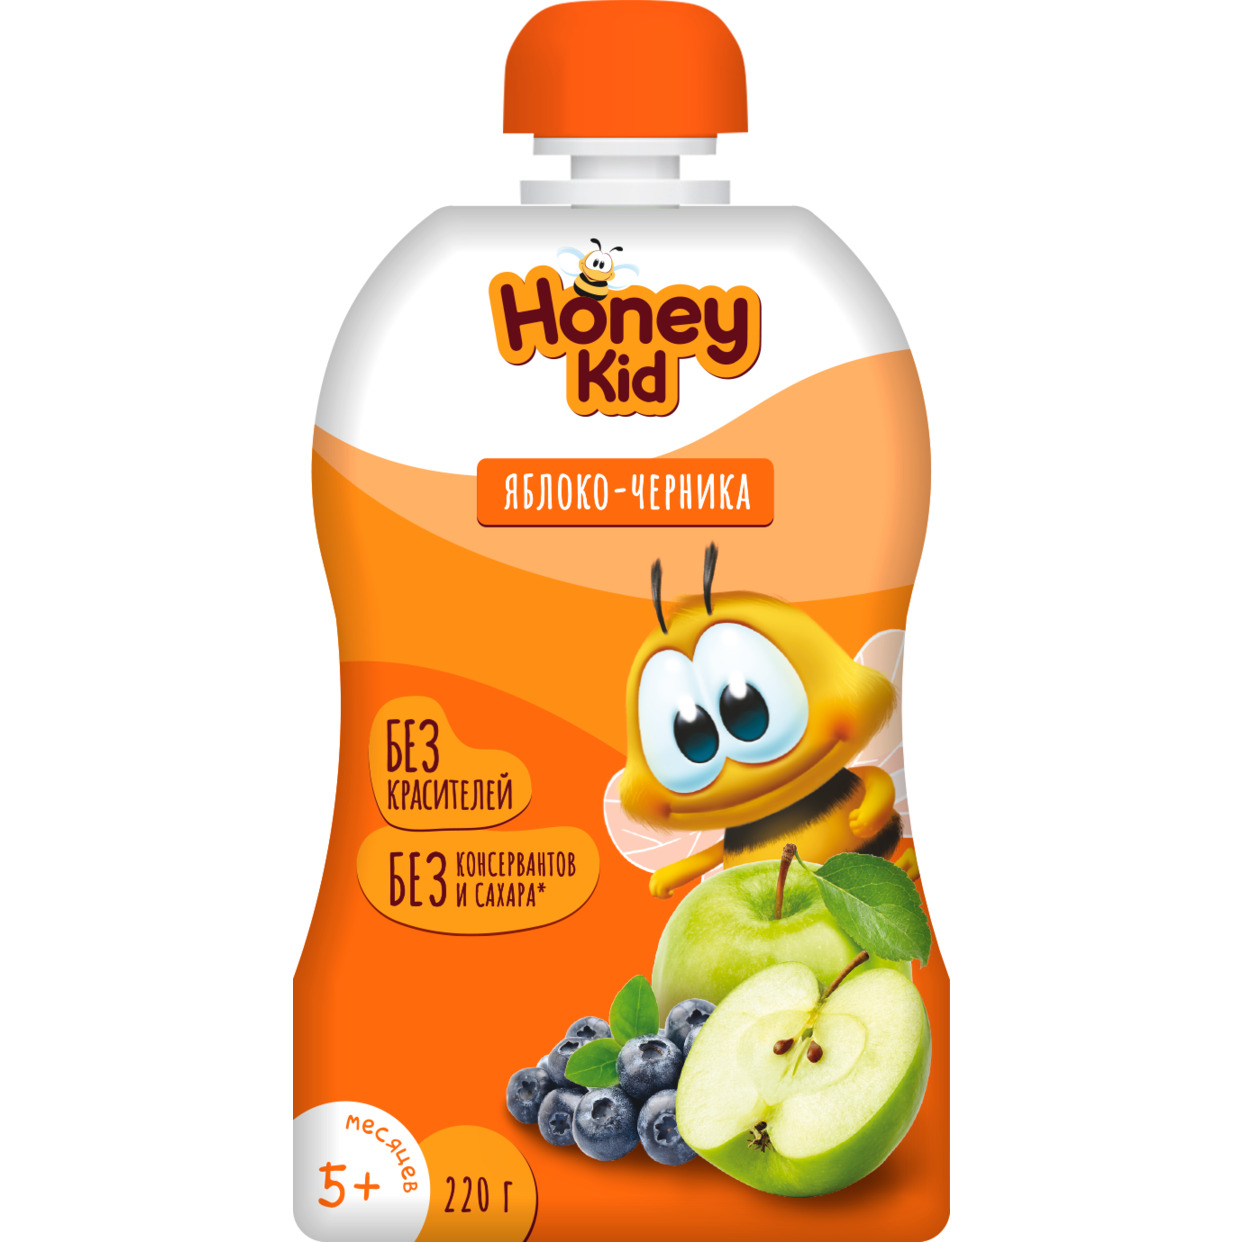 Пюре "Honey Kid" из яблок и черники для детского питания для детей раннего возраста гомогенизированное, стерилизованное с 5 месяцев 220г